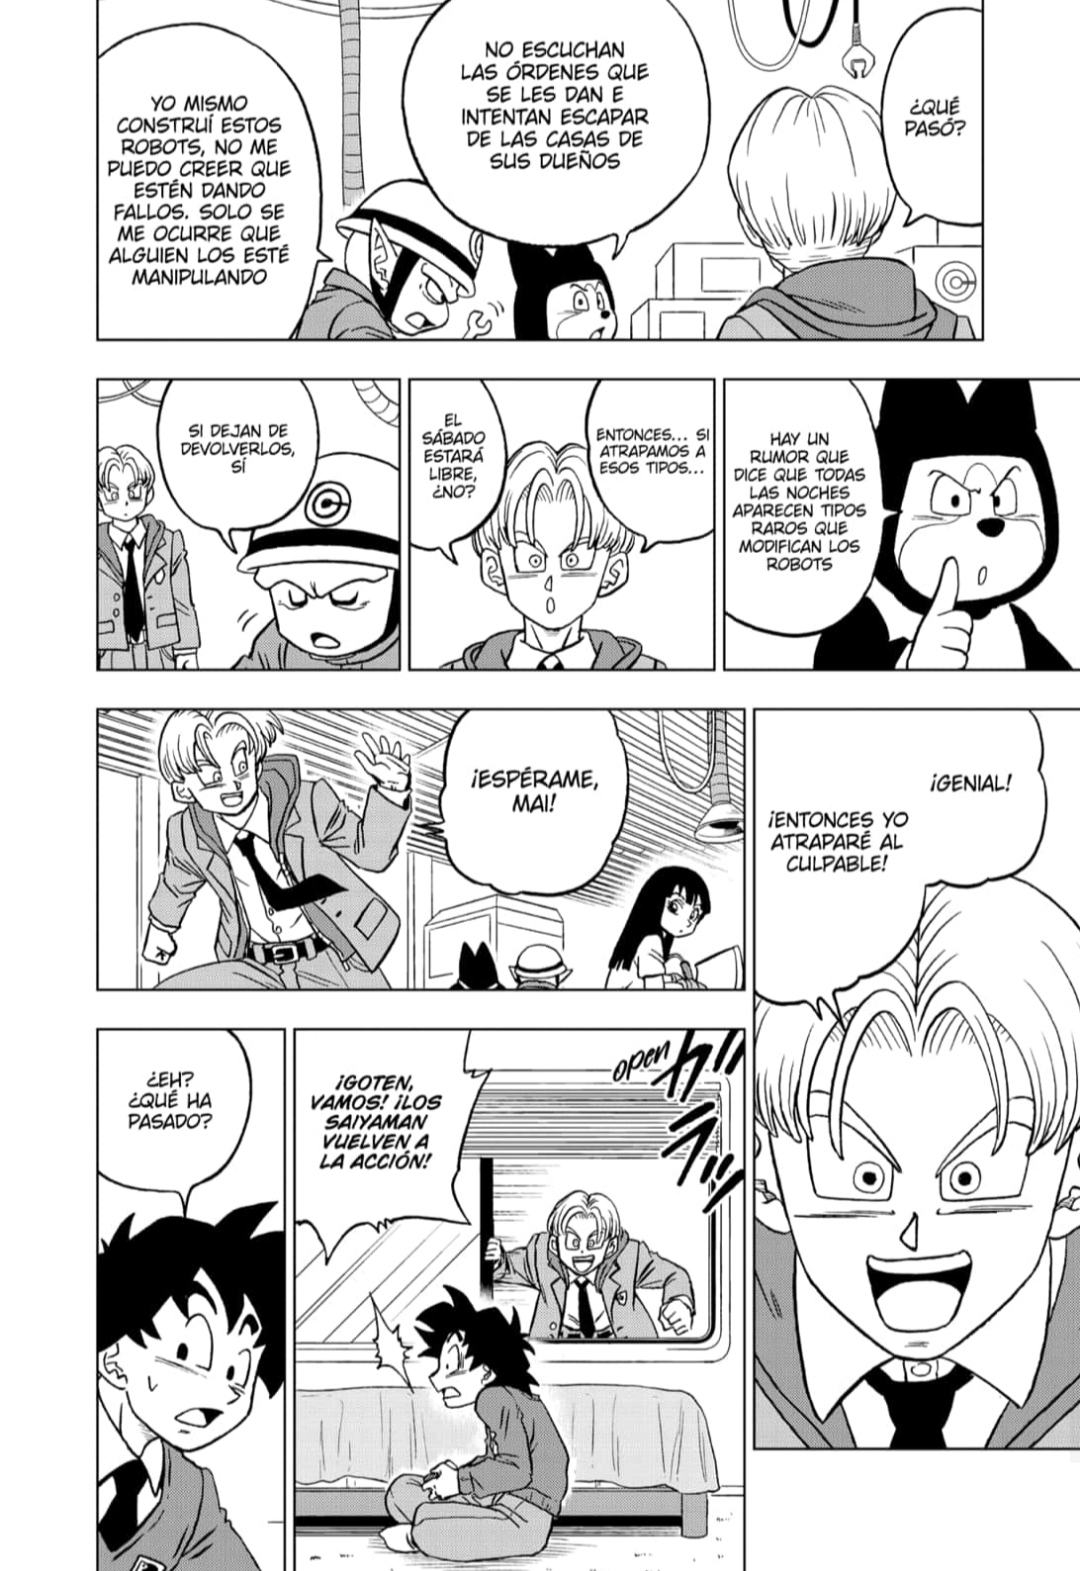 Dragon Ball Super Manga capitulo 88 spoilers: el regreso del manga nos ha  dejado grandes referencias y recuerdos inolvidables